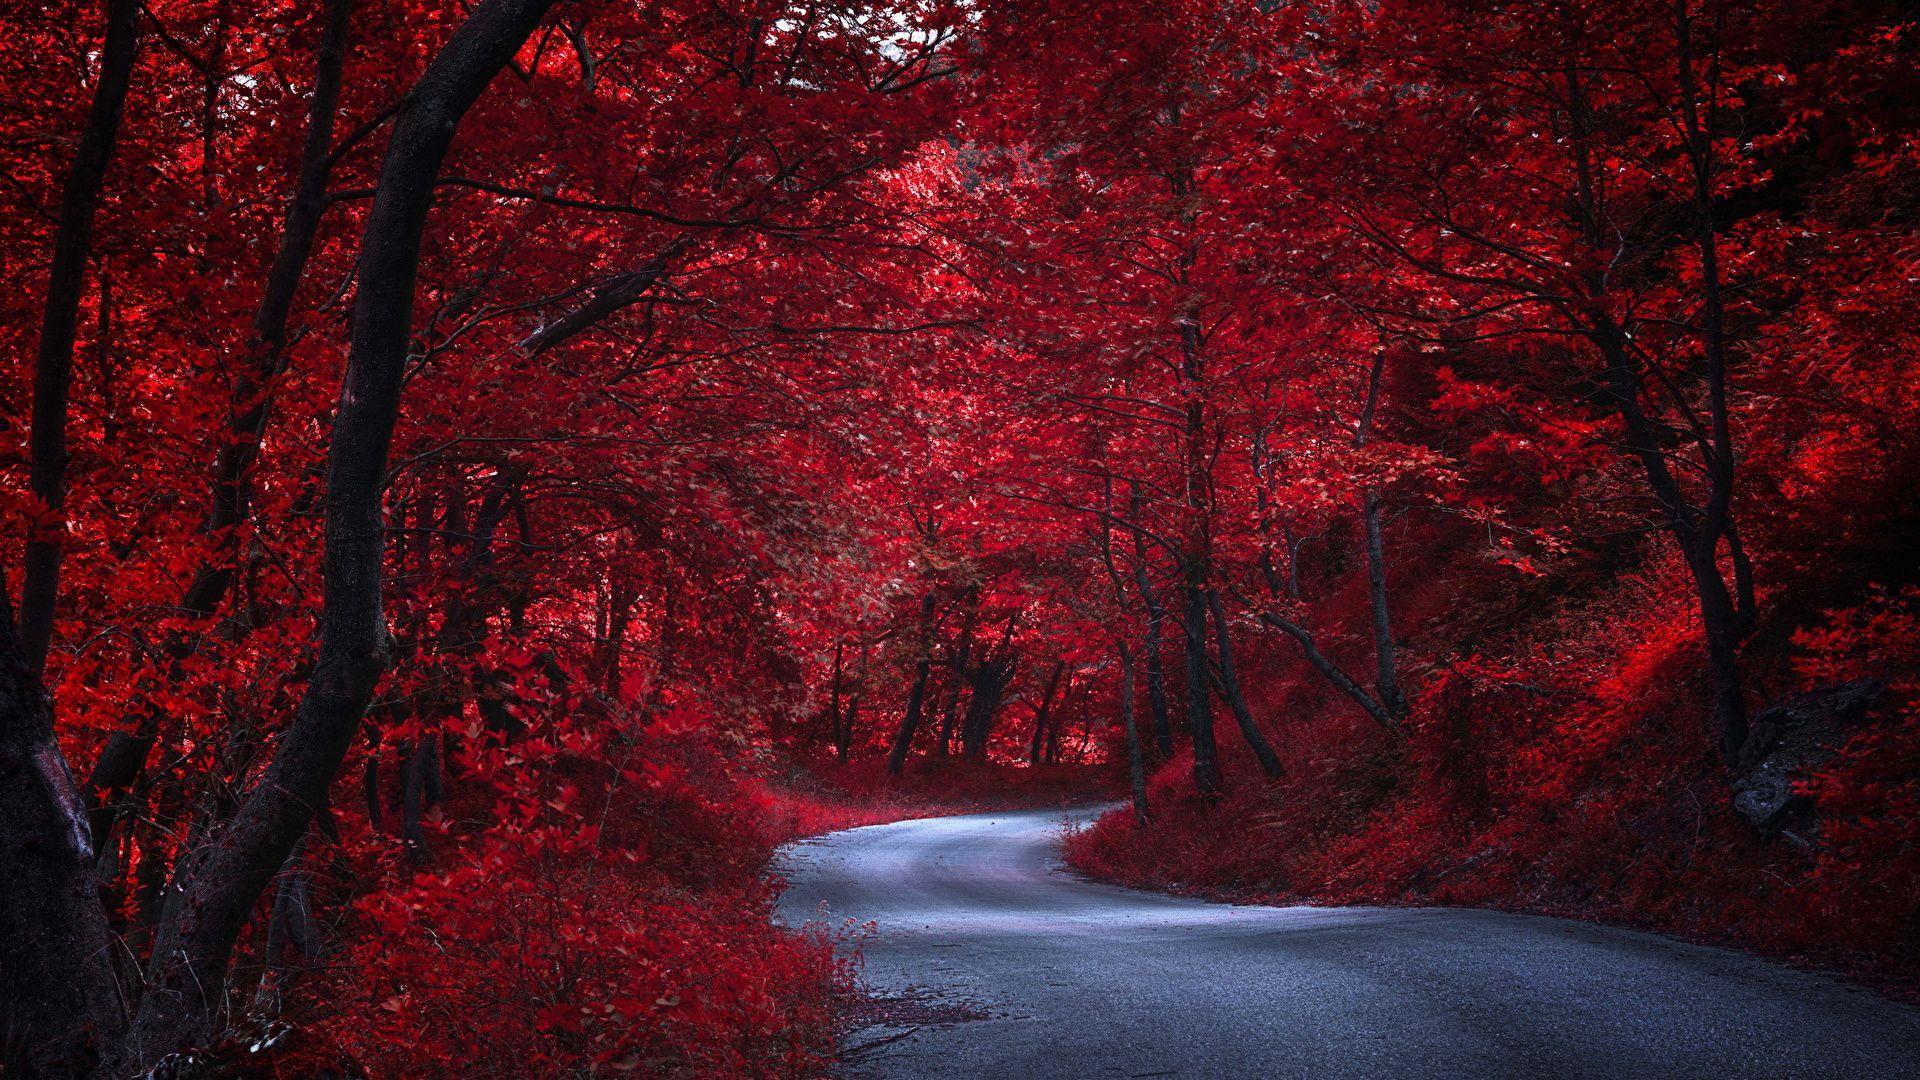 Những cây đỏ lộng lẫy giữa thiên nhiên xanh tươi như một điểm nhấn nổi bật, thu hút ánh nhìn của ai đi qua. Xem ngay hình ảnh liên quan để tận hưởng sự điệu đà, nổi bật này.